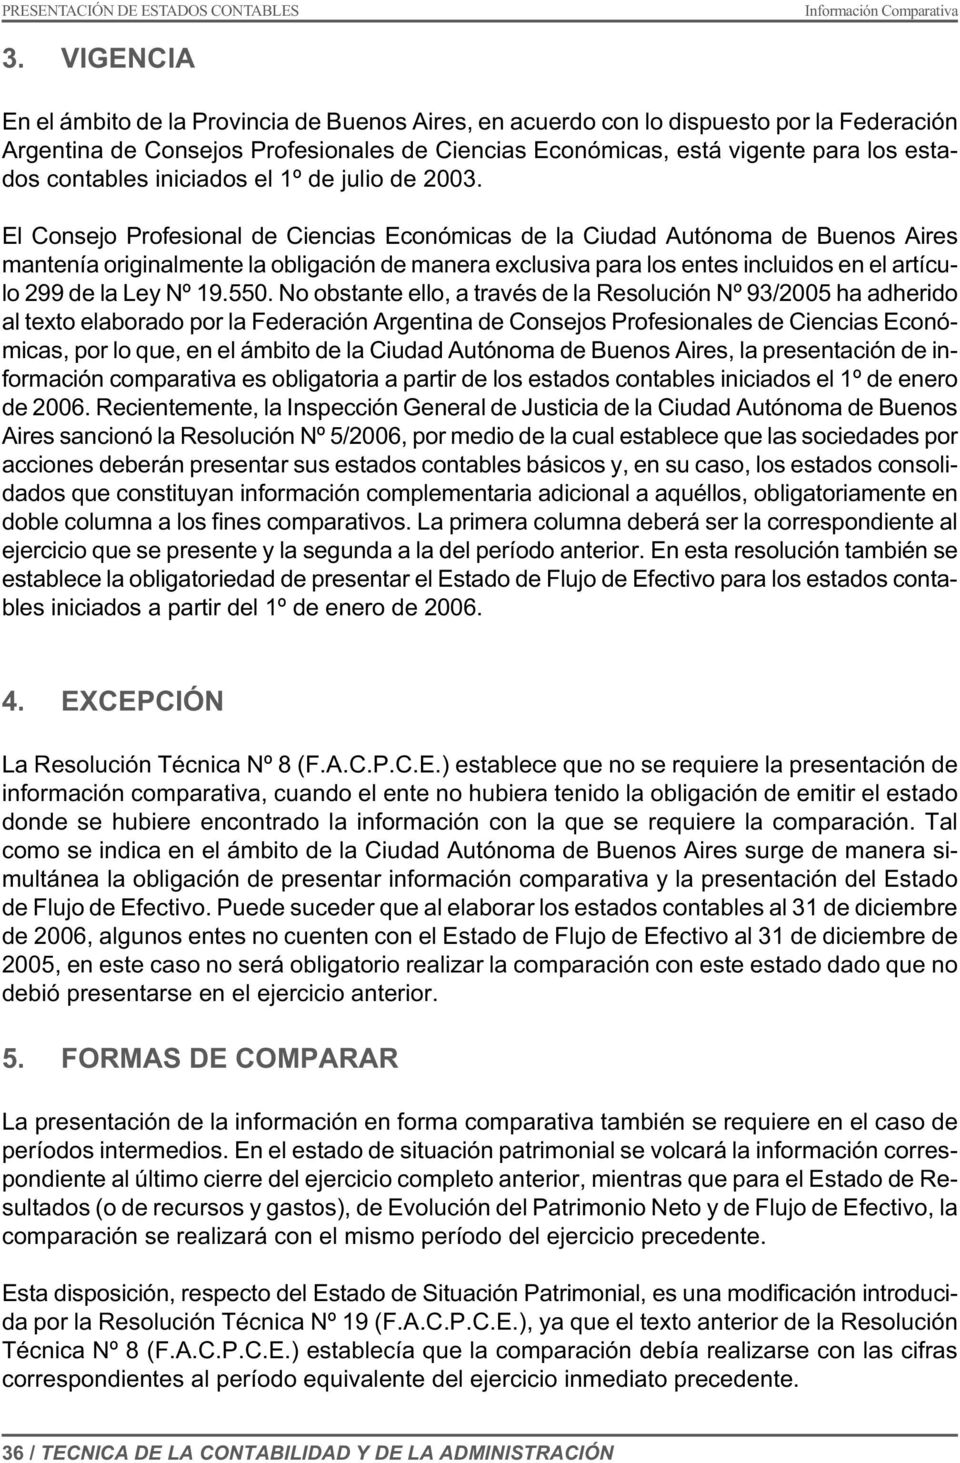 El Consejo Profesional de Ciencias Económicas de la Ciudad Autónoma de Buenos Aires mantenía originalmente la obligación de manera exclusiva para los entes incluidos en el artículo 299 de la Ley Nº